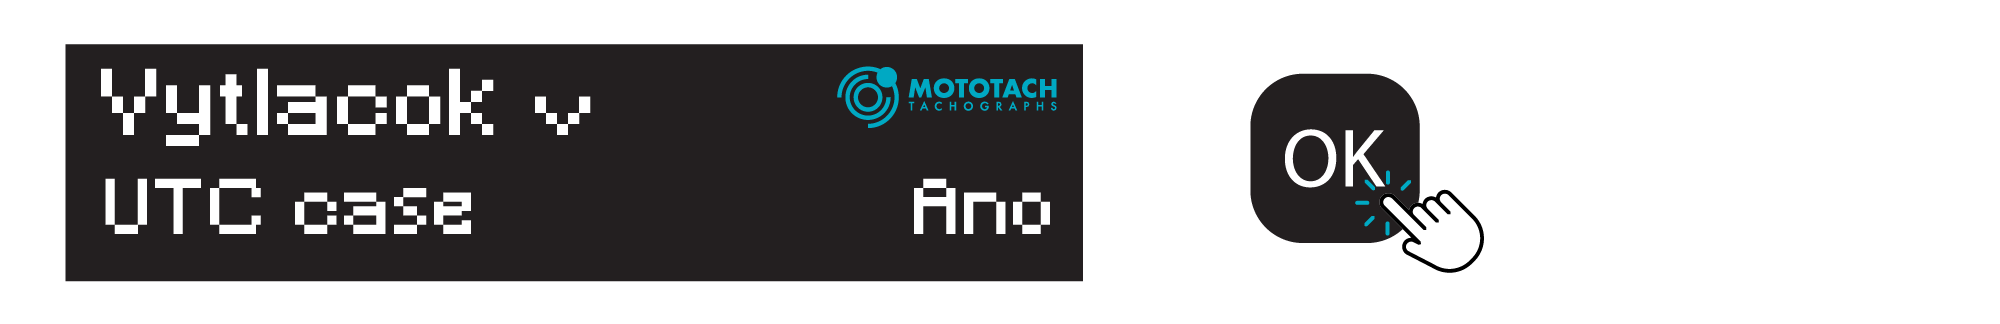 Tachograf vytlačok technickych údajovArtboard 5-min